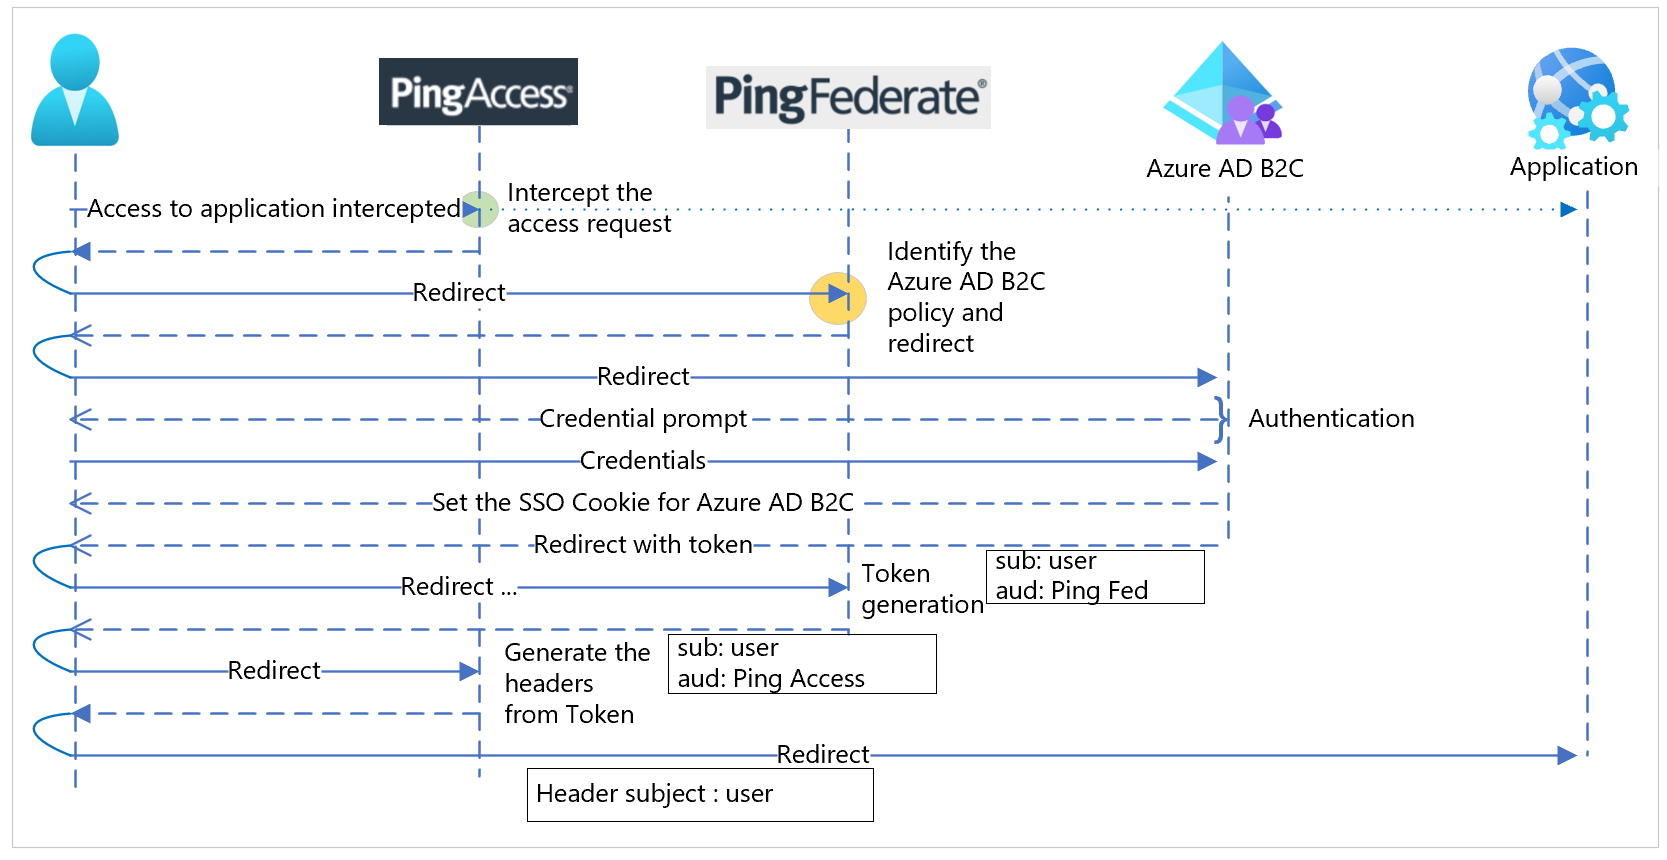 Diagrama do fluxo de sequência de protocolos para PingAccess, PingFederate, Azure AD B2C e a aplicação.